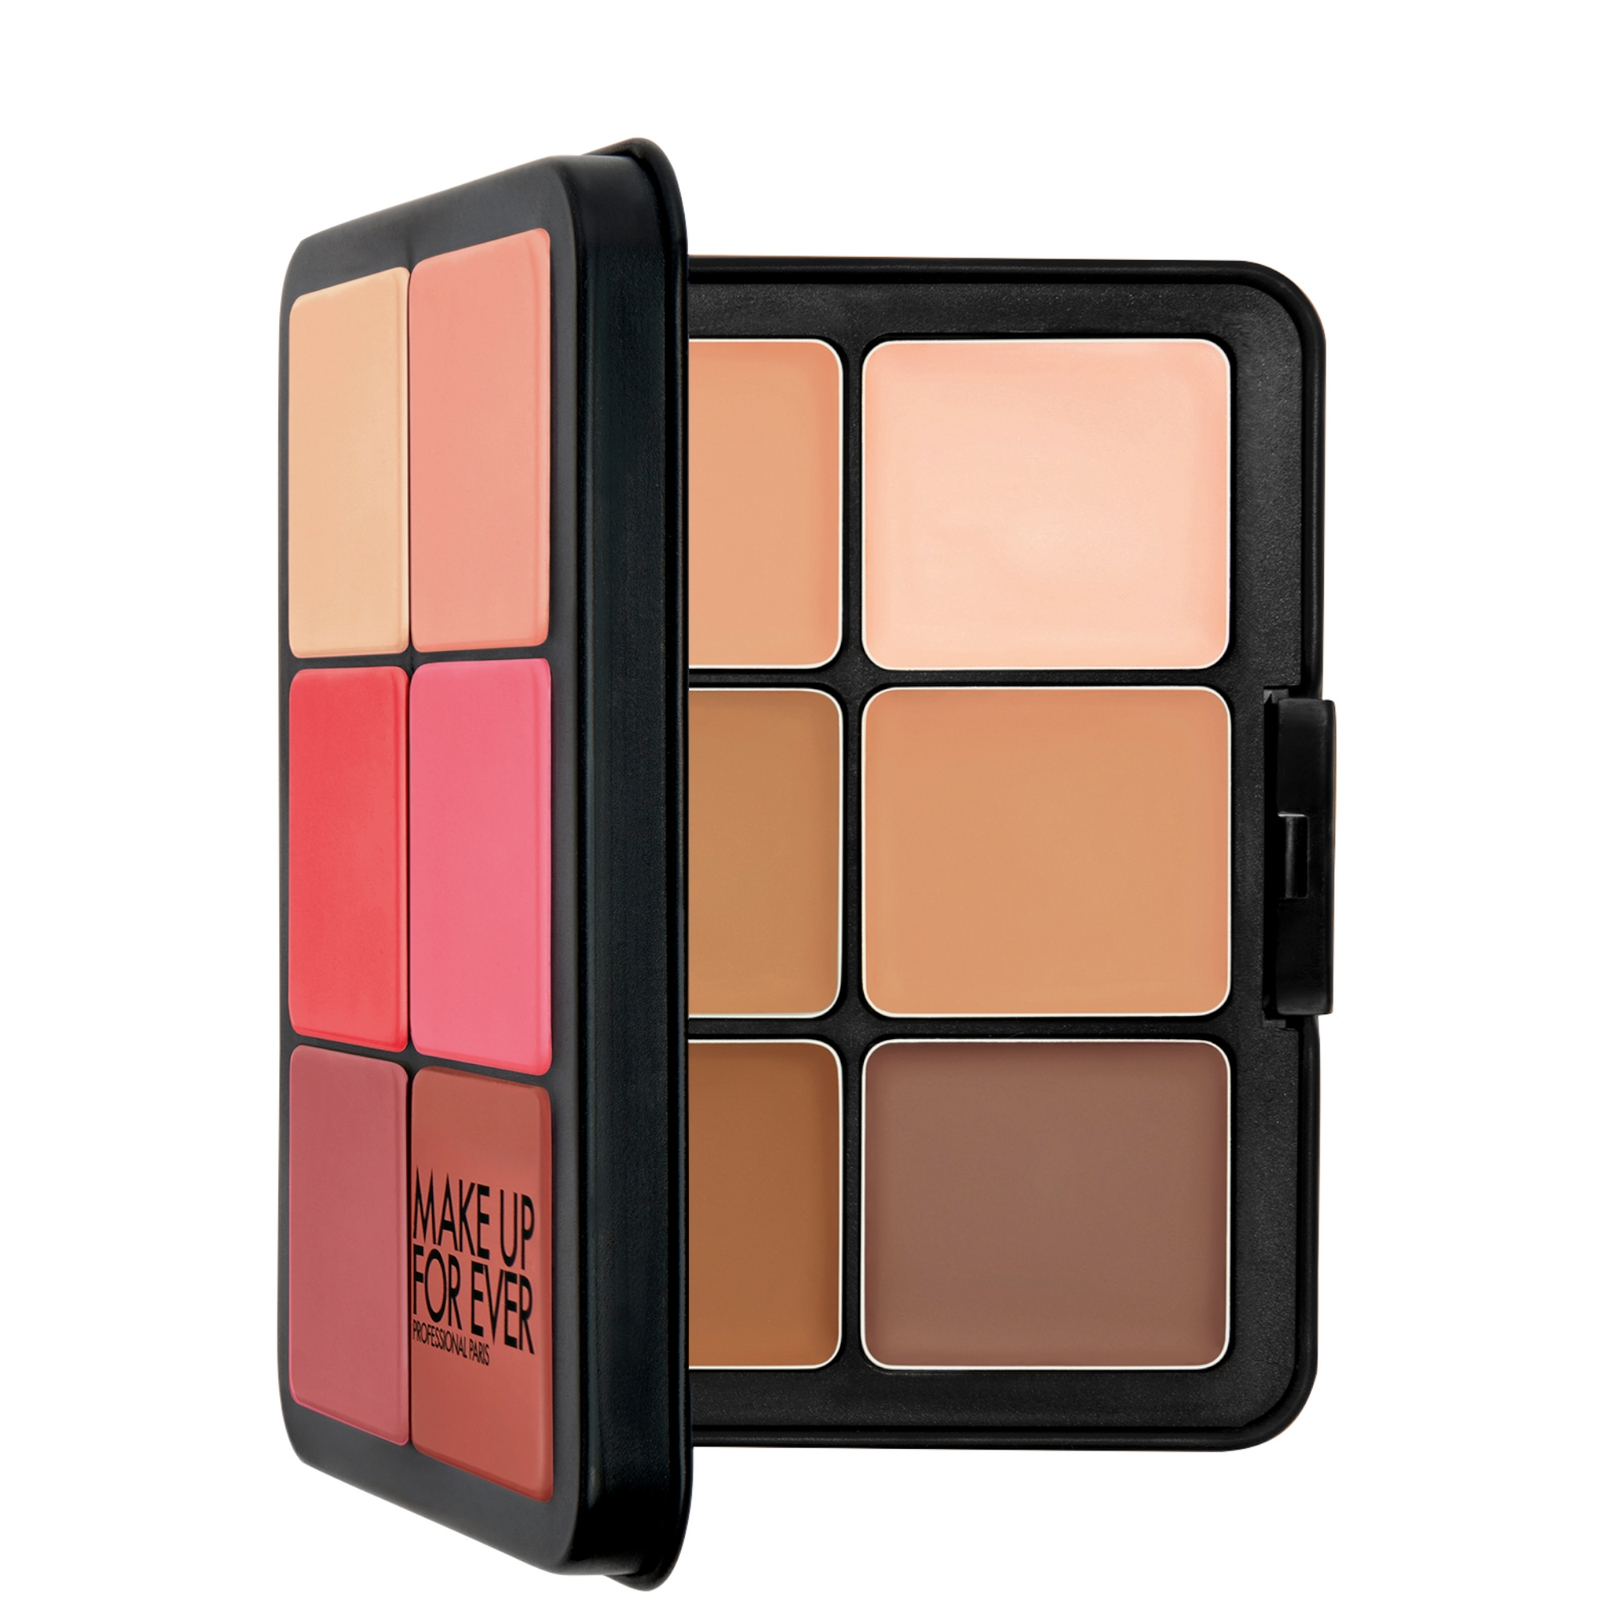 Shop Make Up For Ever Hd Skin Face Essentials Palette 26.5g - 01 Light